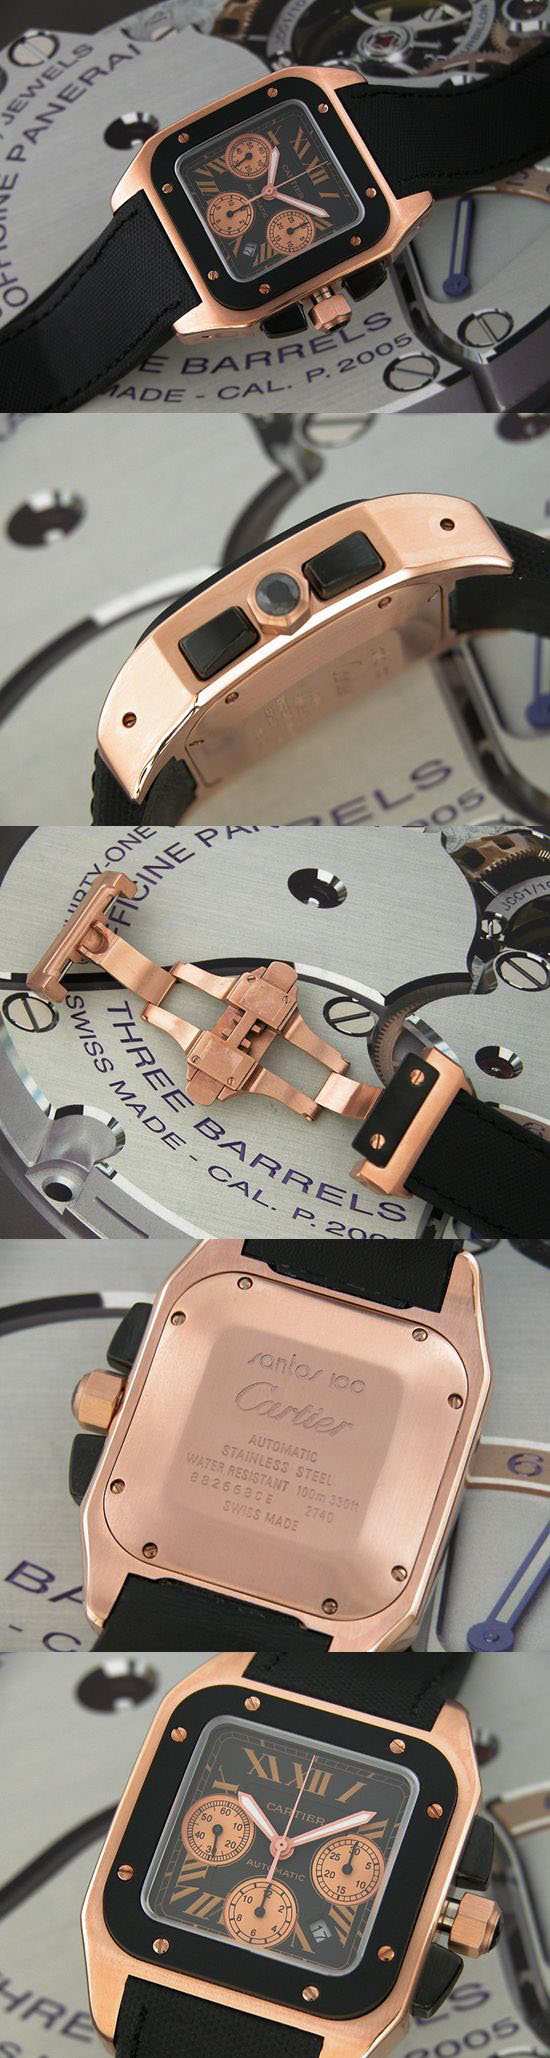 おしゃれなブランド時計がカルティエ-サントス100-CARTIER-W2020003-ao-男性用を提供します.